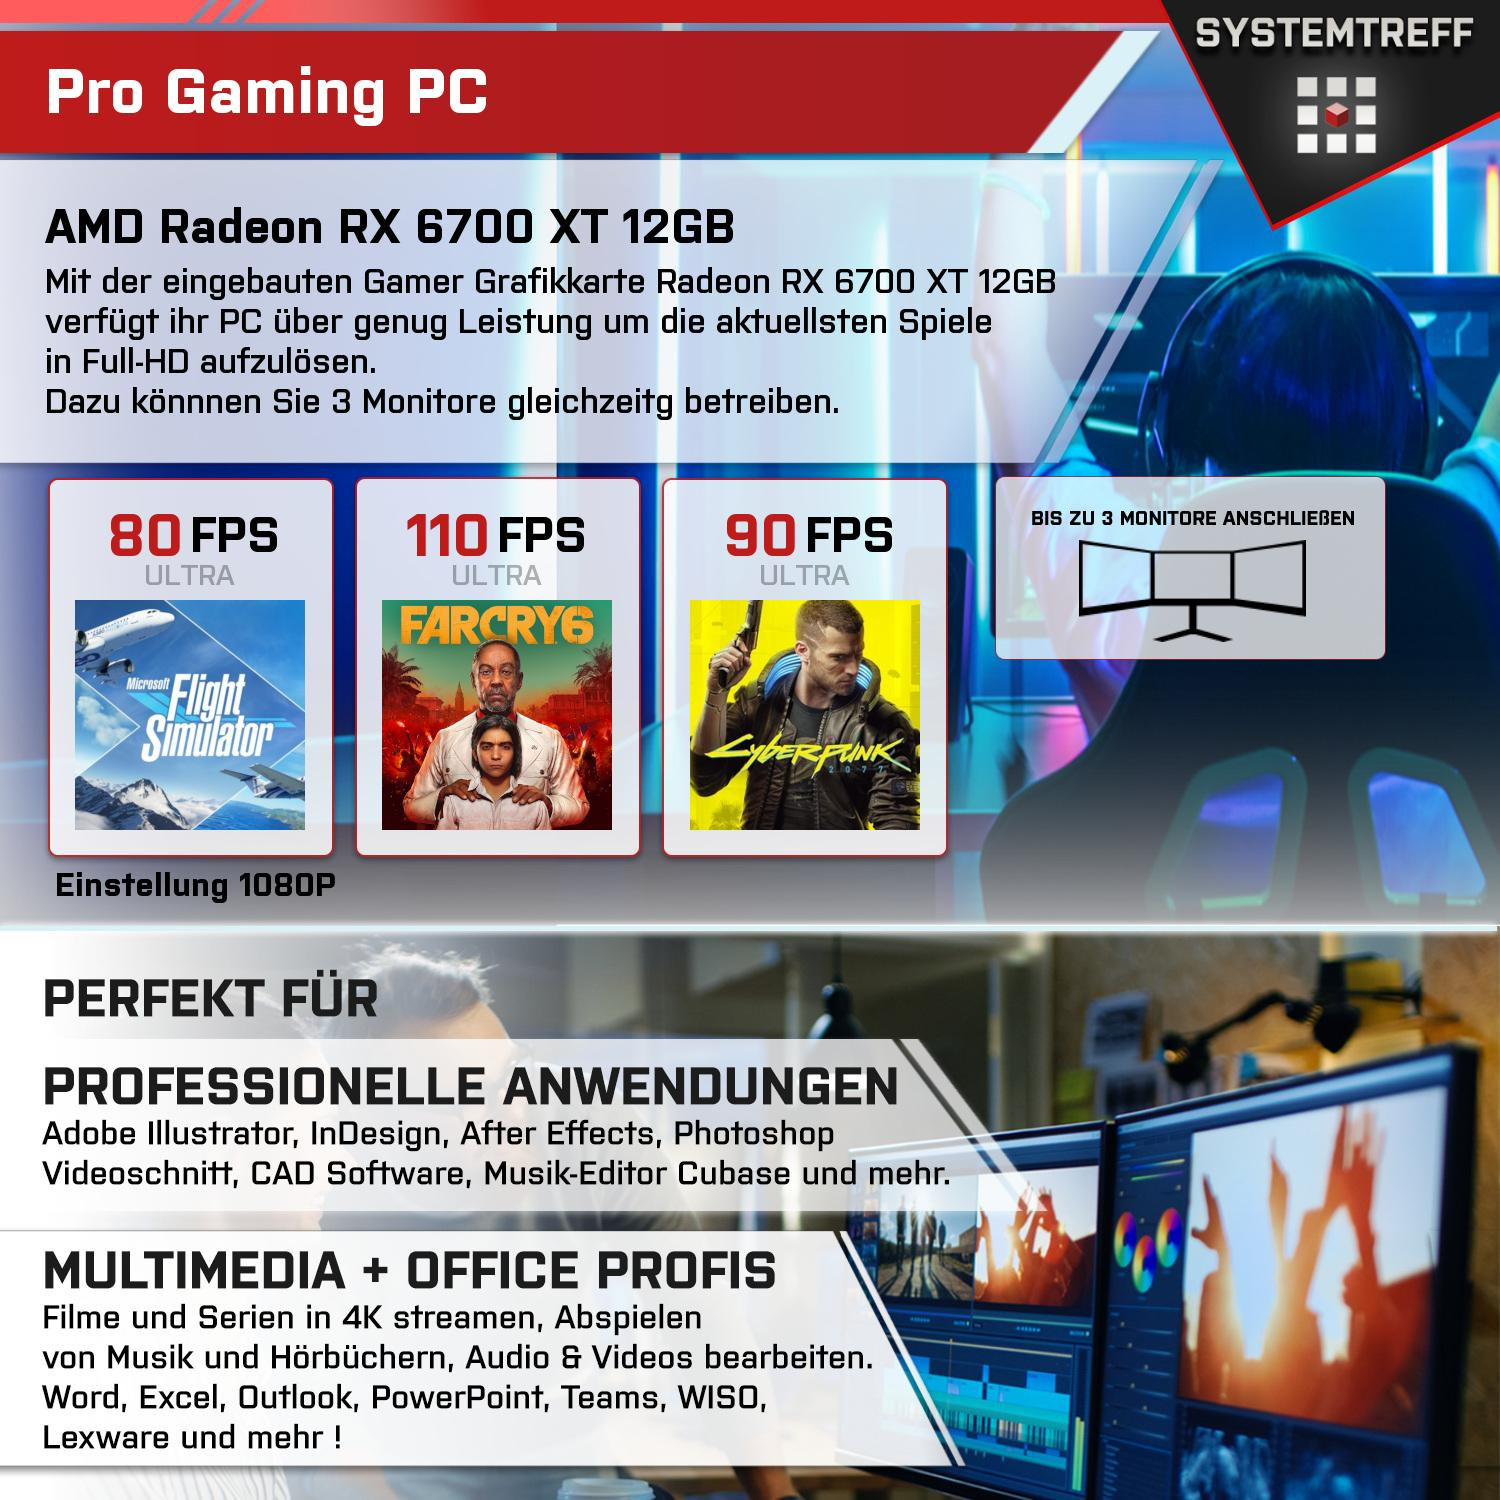 SYSTEMTREFF Gaming Komplett AMD 5700X 5700X, 7 Ryzen mit AMD Komplett 6700 32 GB PC XT 1000 RAM, Prozessor, mSSD, GDDR6, GB GB RX 12GB Radeon 12